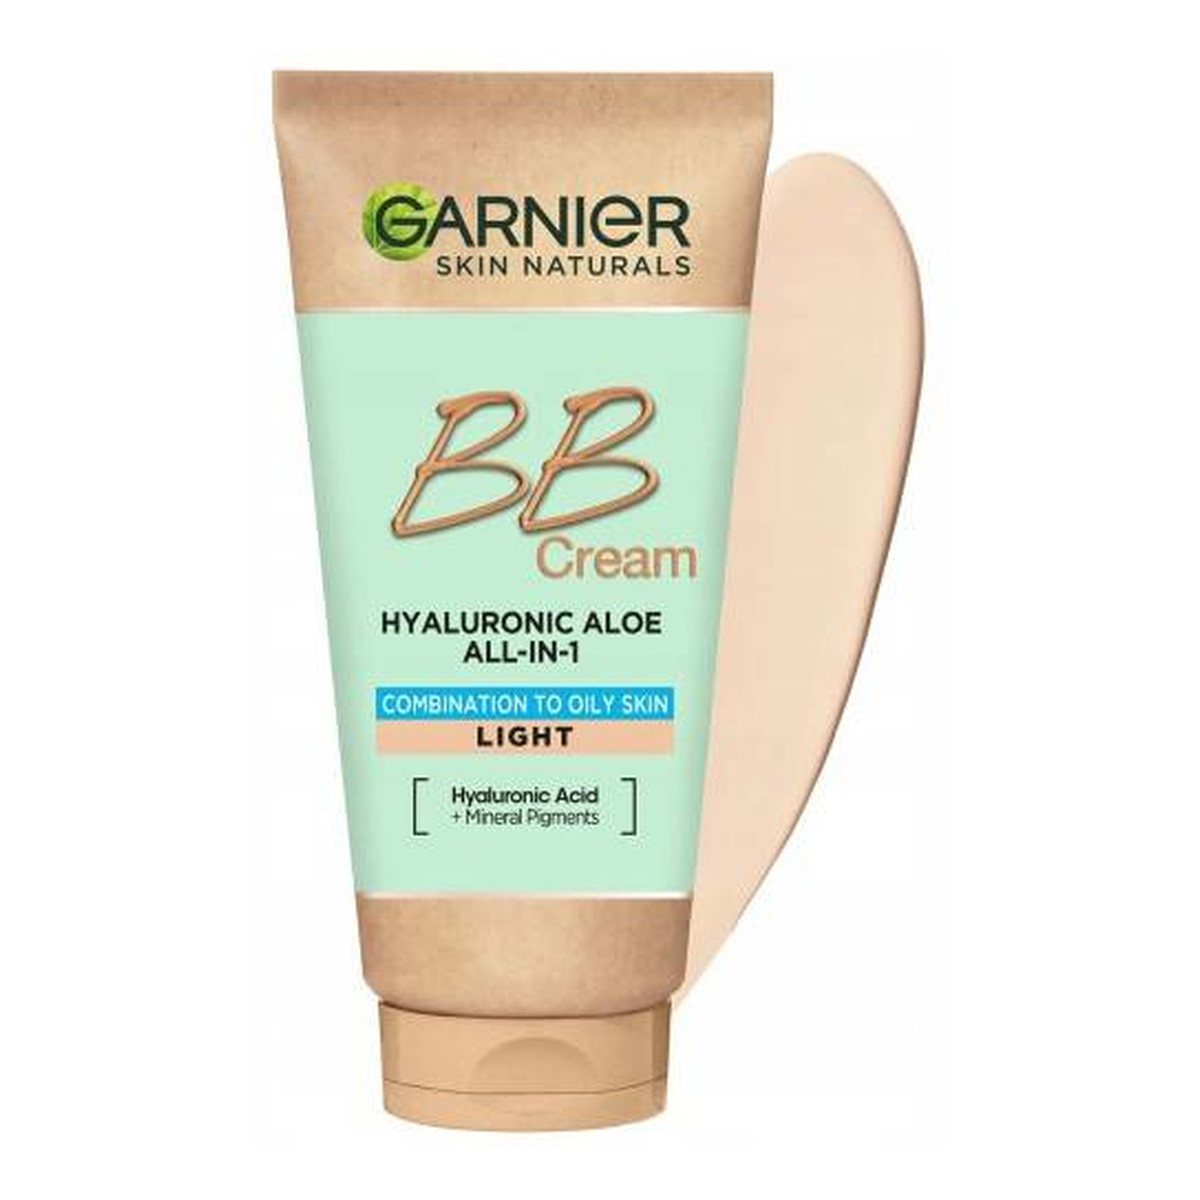 Garnier Hyaluronic Aloe All-In-1 BB Cream nawilżający Krem BB dla skóry tłustej i mieszanej 50ml